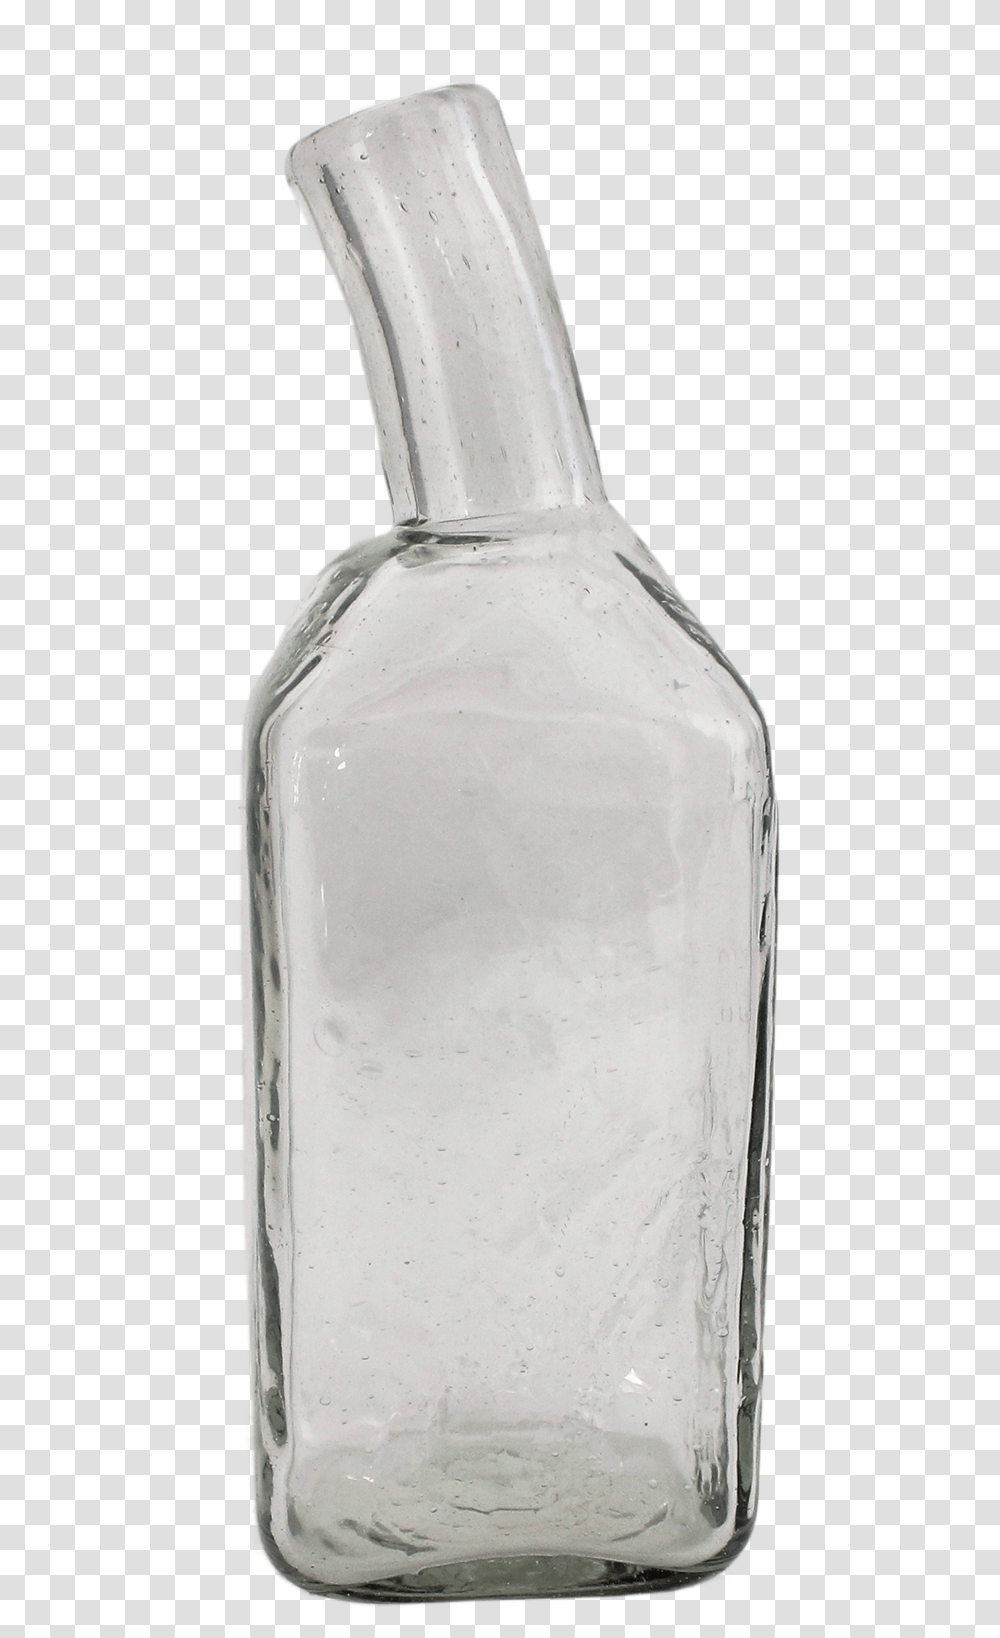 Crooked Neck BottleClass Lazyload Lazyload Fade Glass Bottle, Milk, Beverage, Drink, Jar Transparent Png